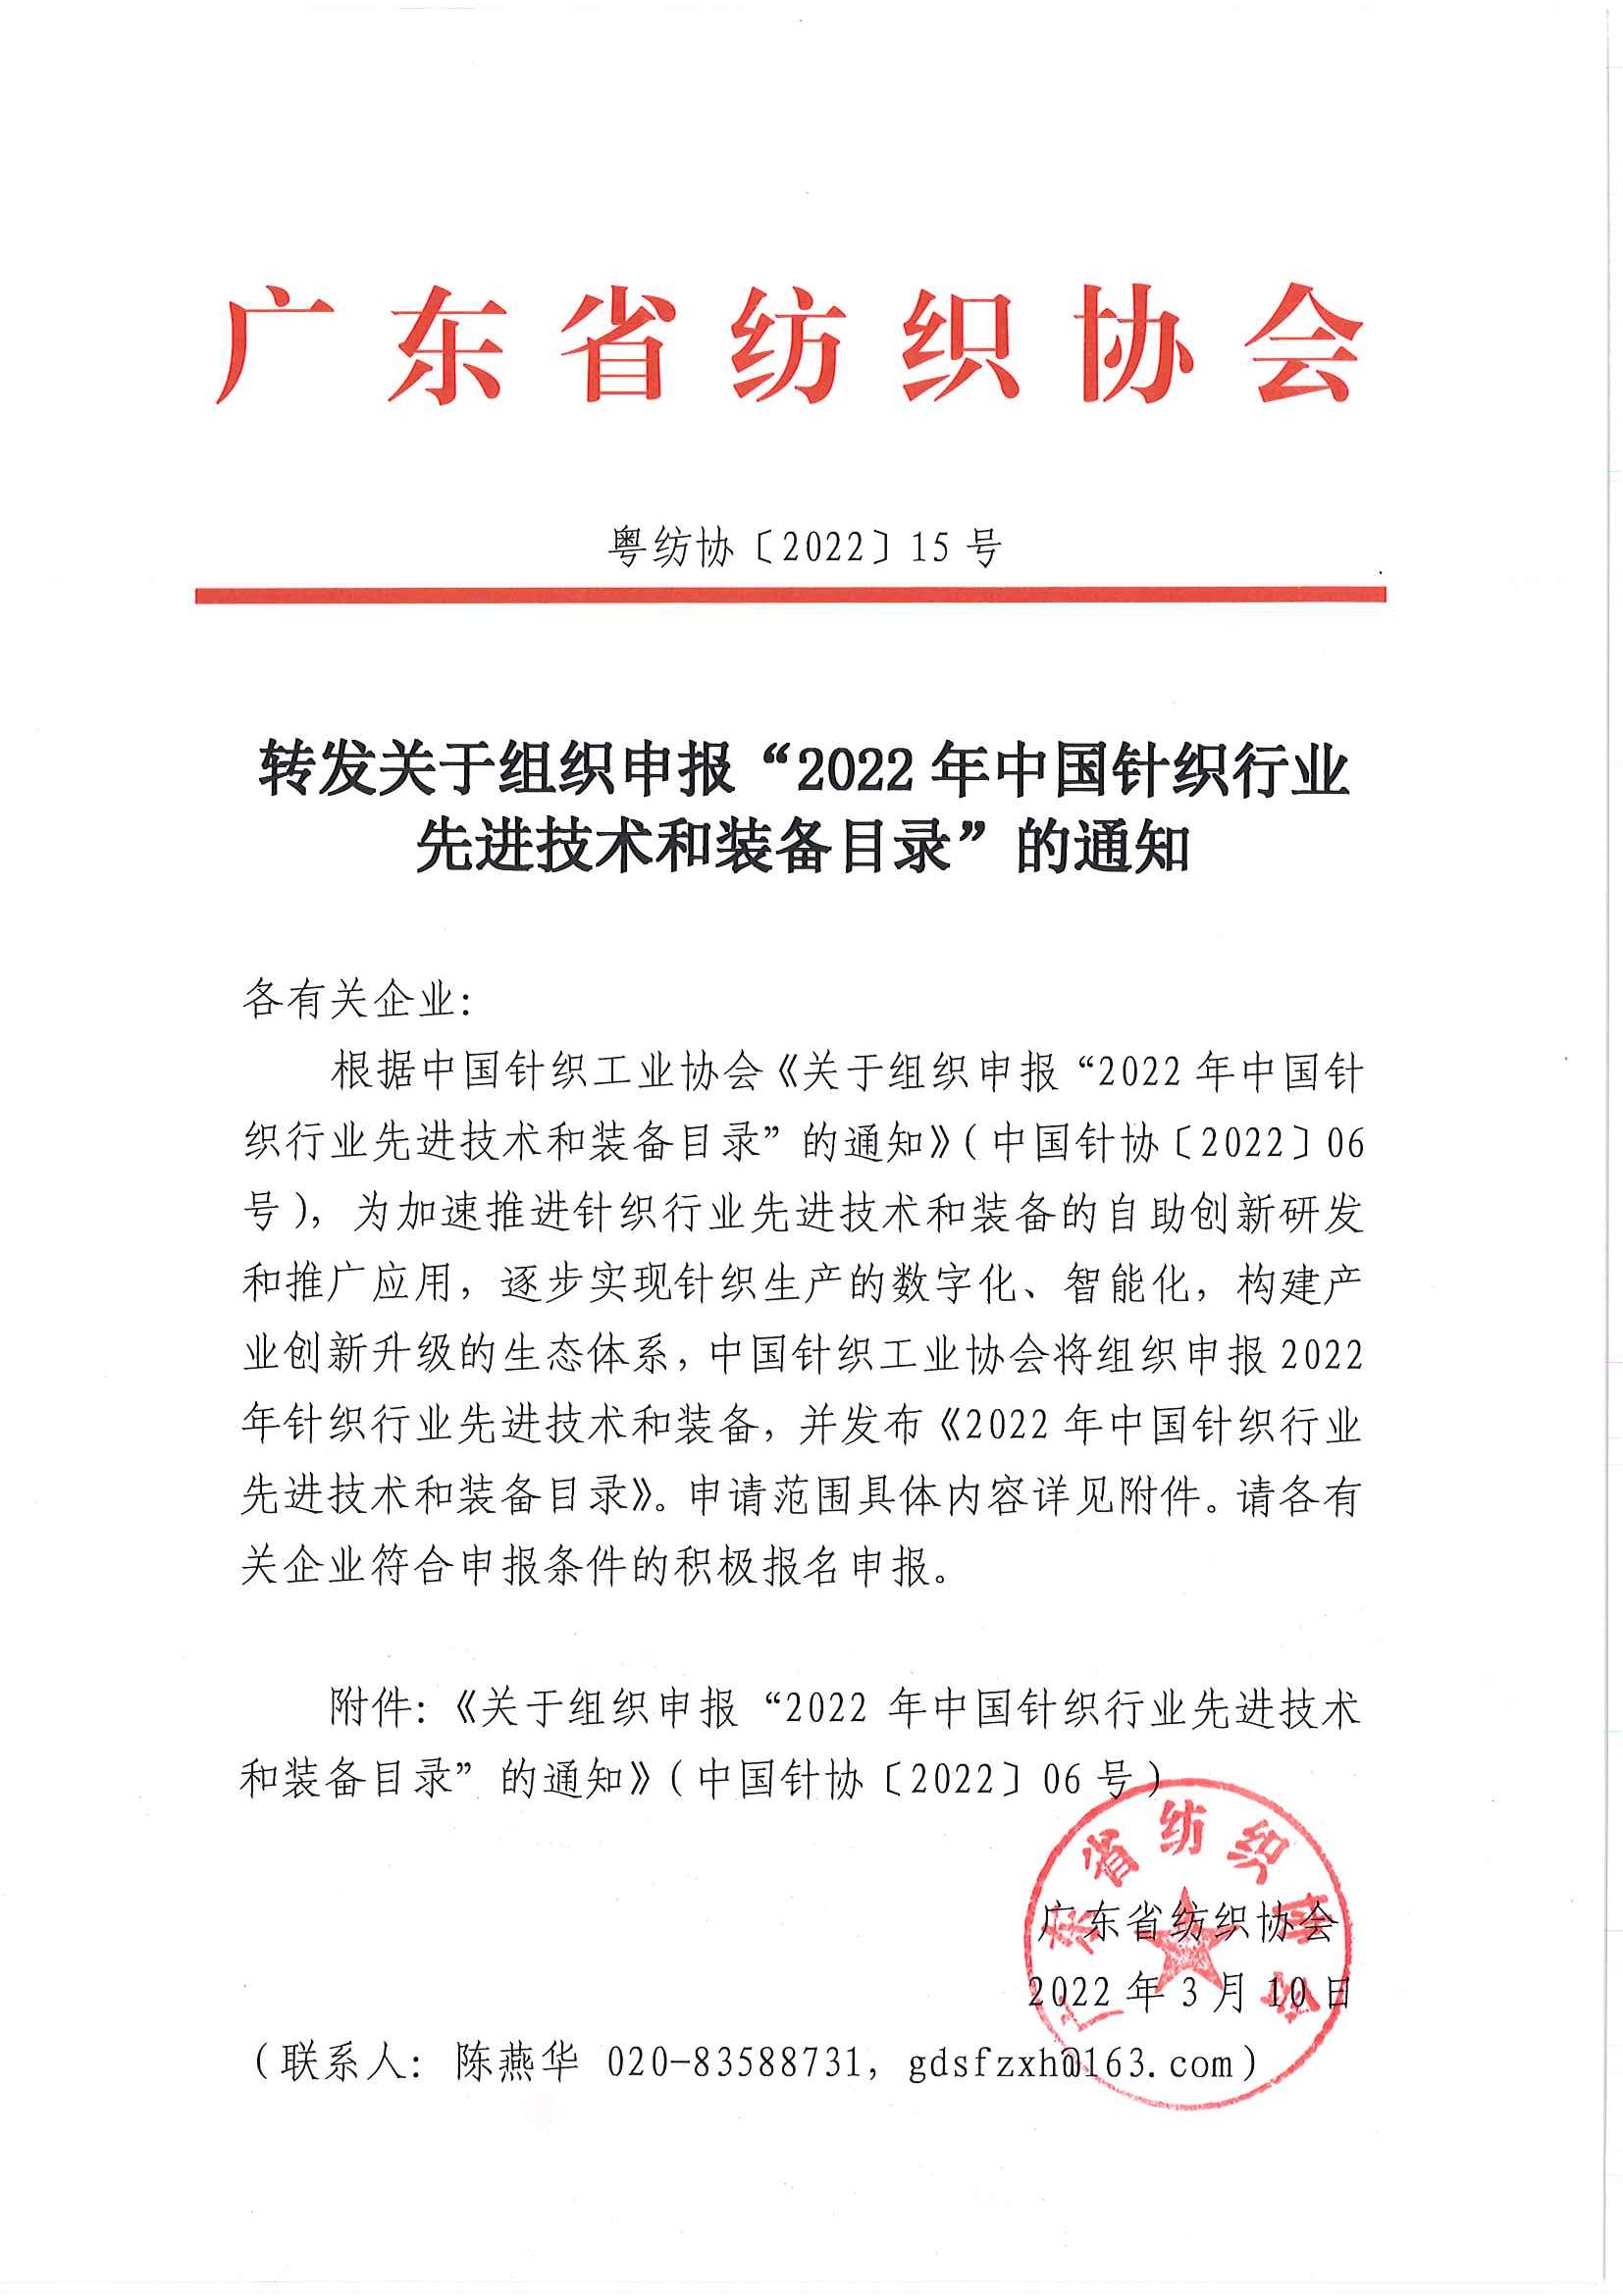 转发关于组织申报“2022年中国针织行业先进技术和装备目录”的通知.jpg